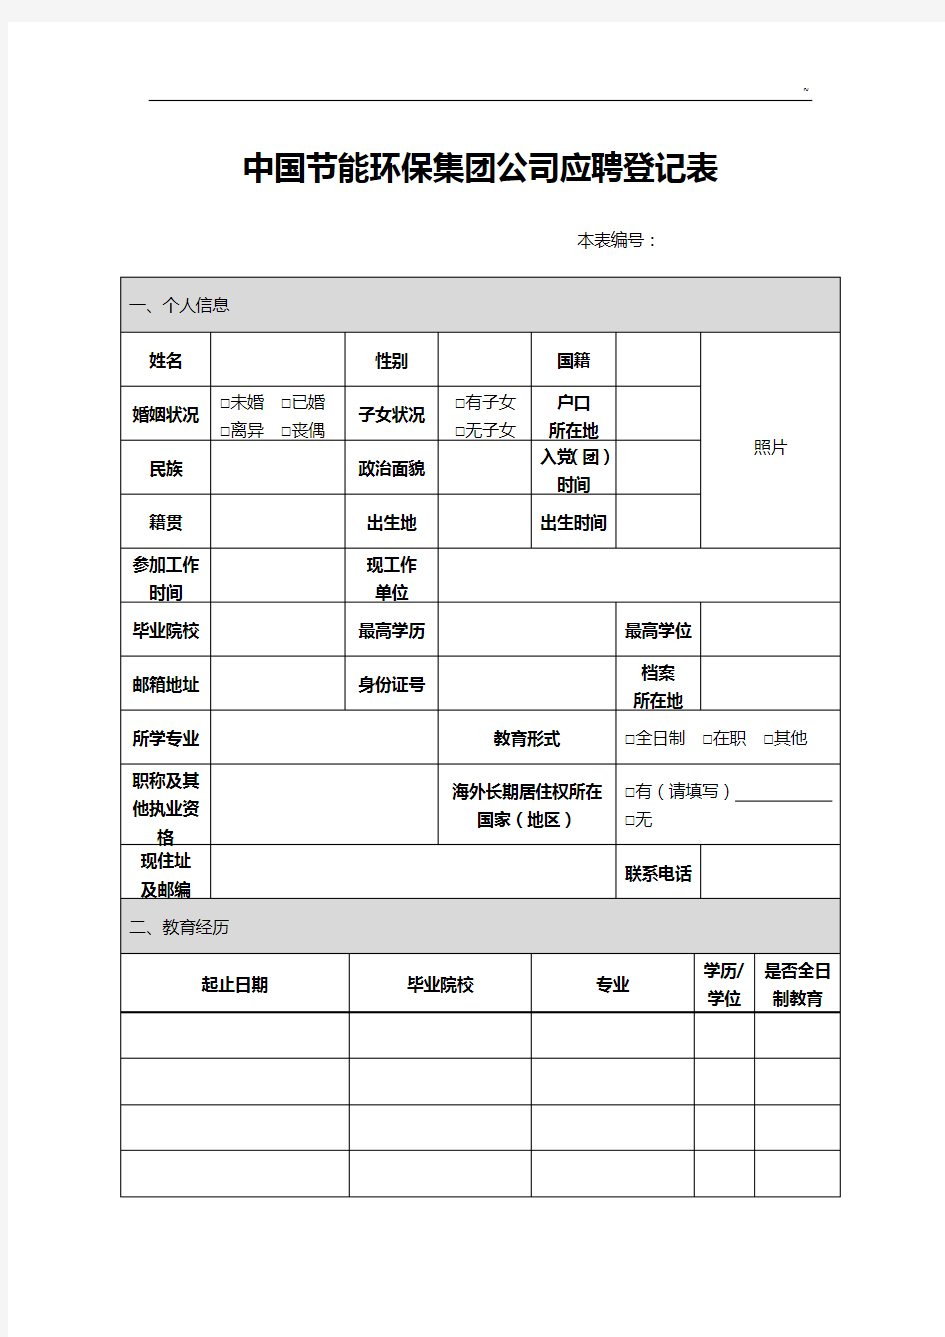 中国节能环保集团企业单位应聘登记表